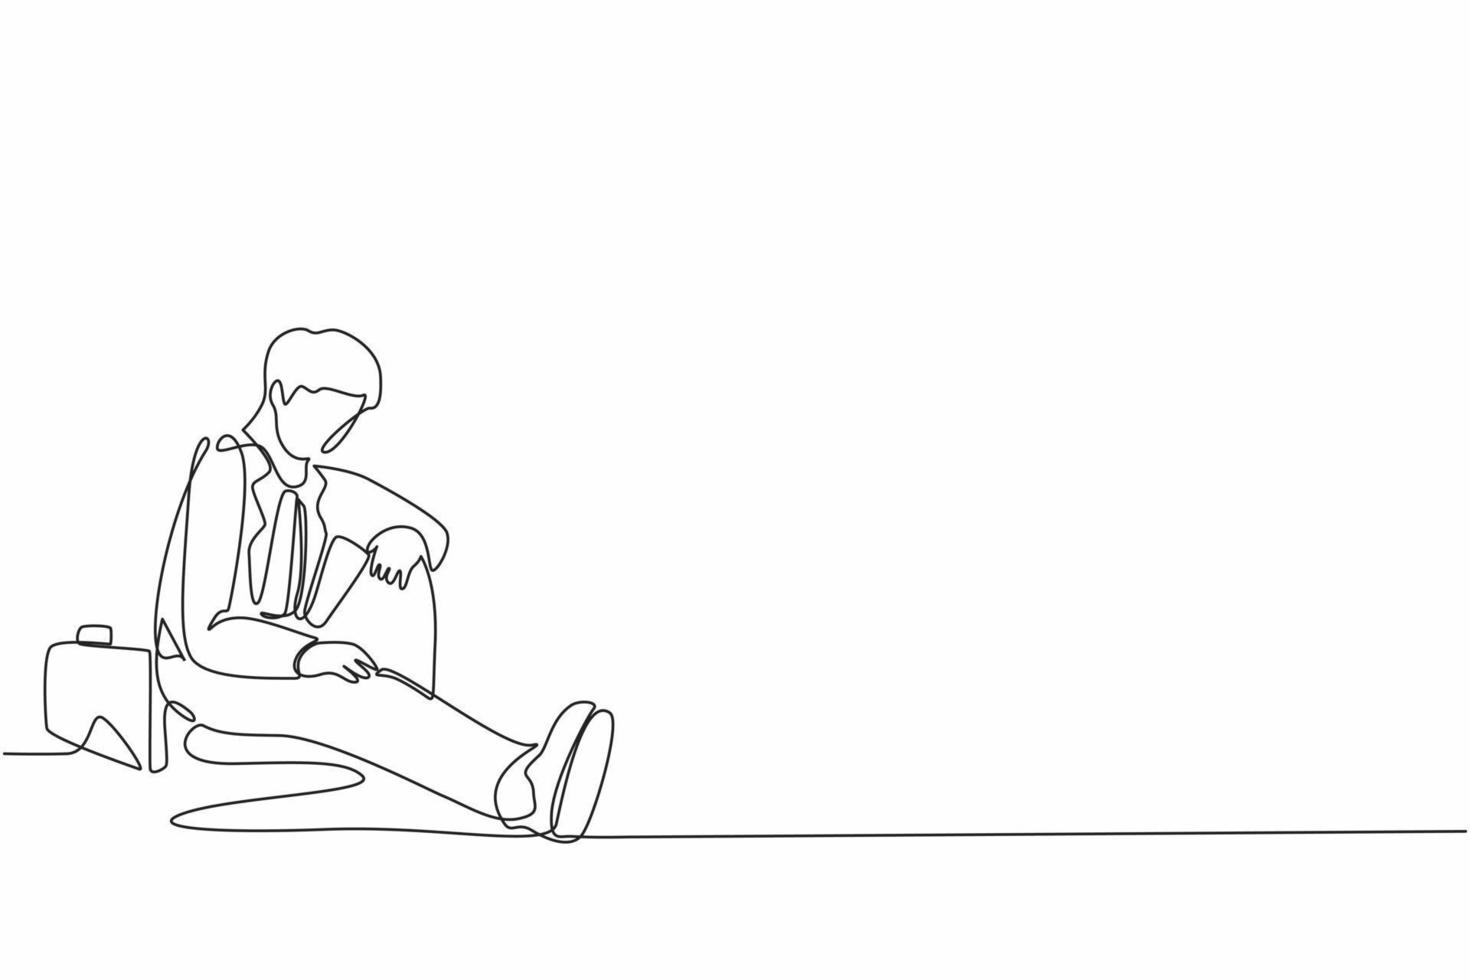 único desenho de uma linha empresário deprimido com maleta sentado em desespero no chão. expressão de gesto triste do empresário. síndrome de burnout profissional. vetor de design gráfico de linha contínua